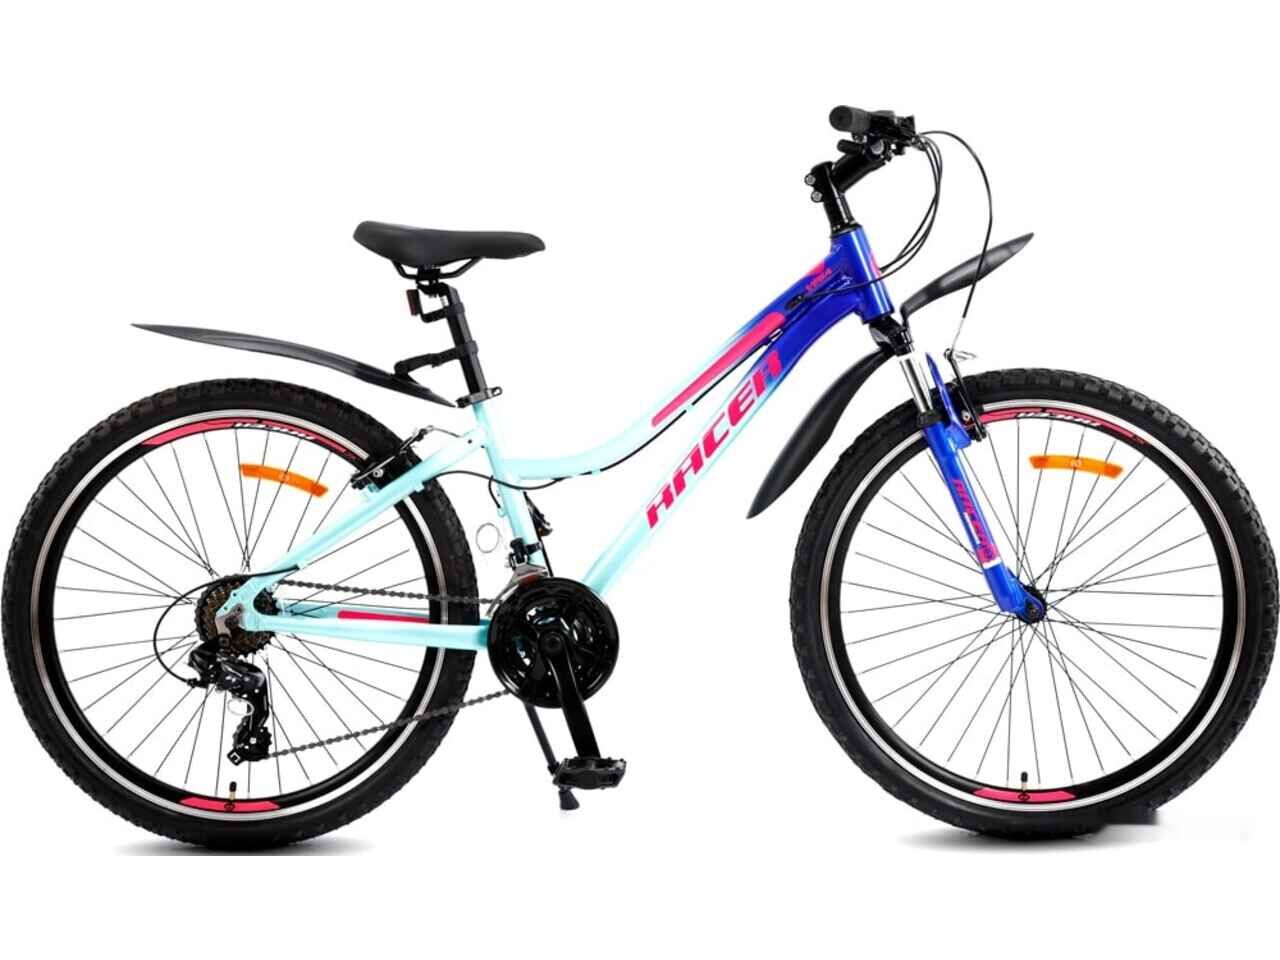 Велосипед Racer Vega 26 2021 (голубой/синий)